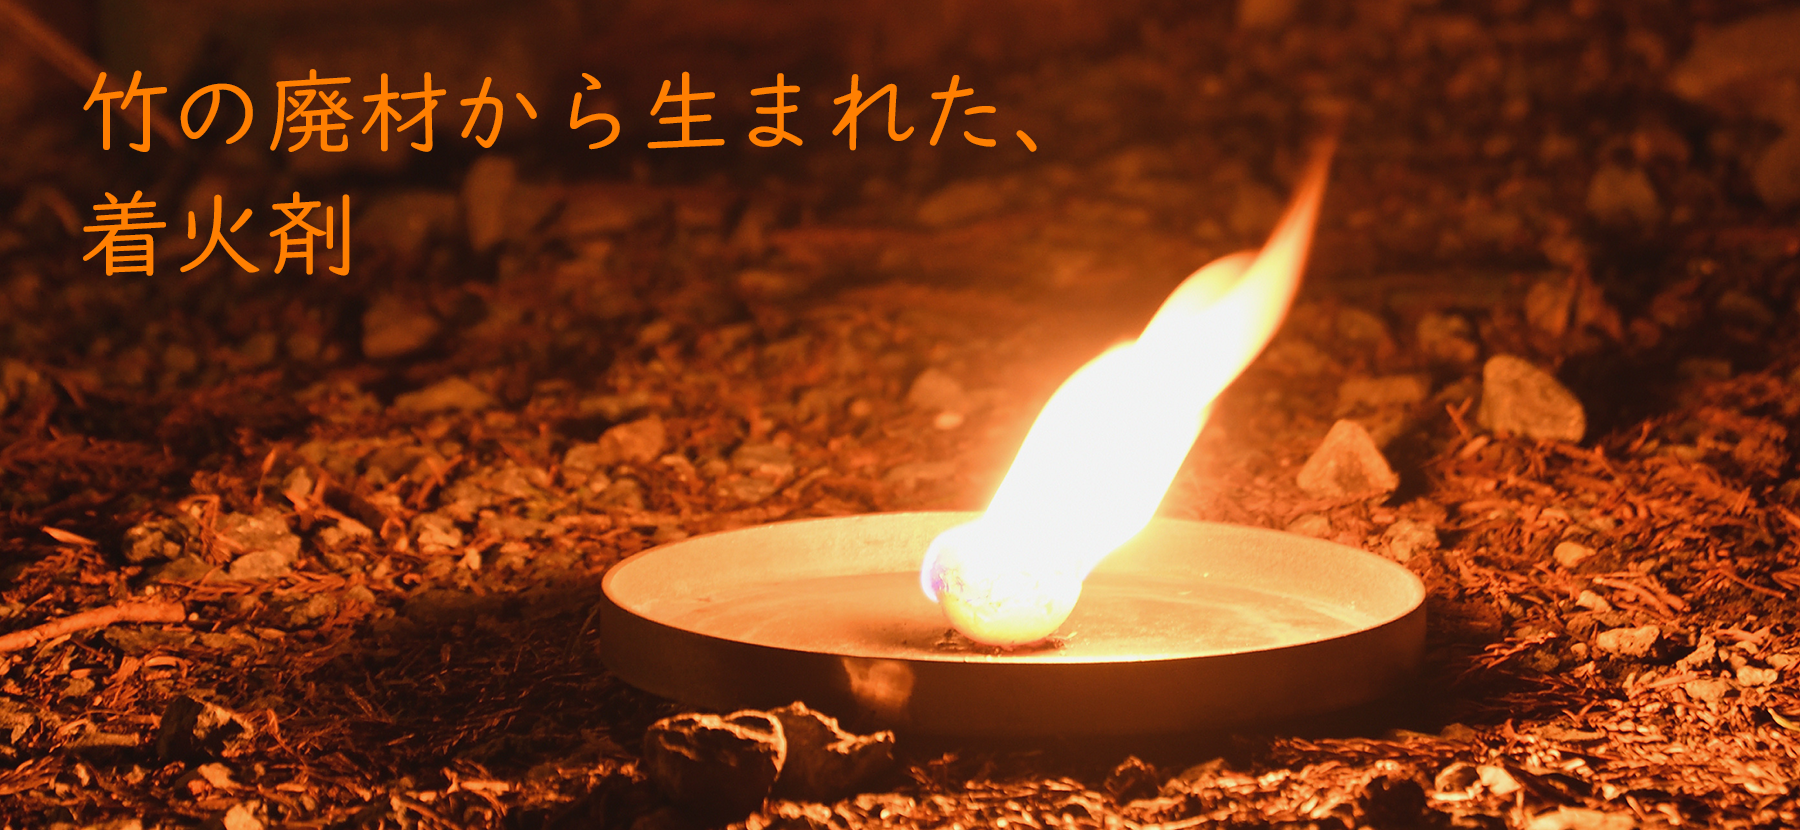 竹の廃材から生まれた、着火剤 TAKENOKO